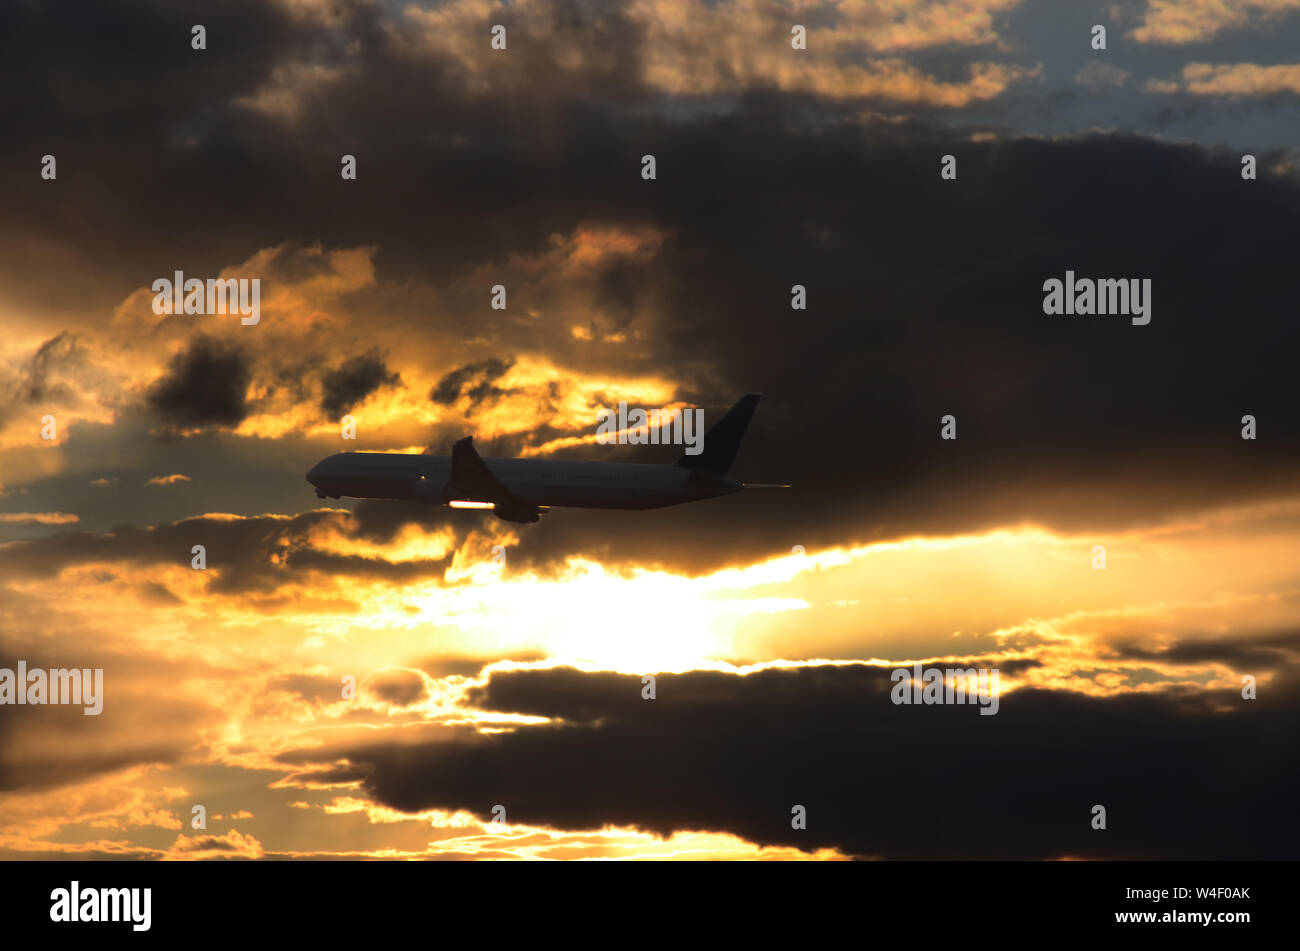 FLUG 419: Kommerzielle Flugzeuge fliegen vom Flughafen Newark in den Abendhimmel. Stockfoto